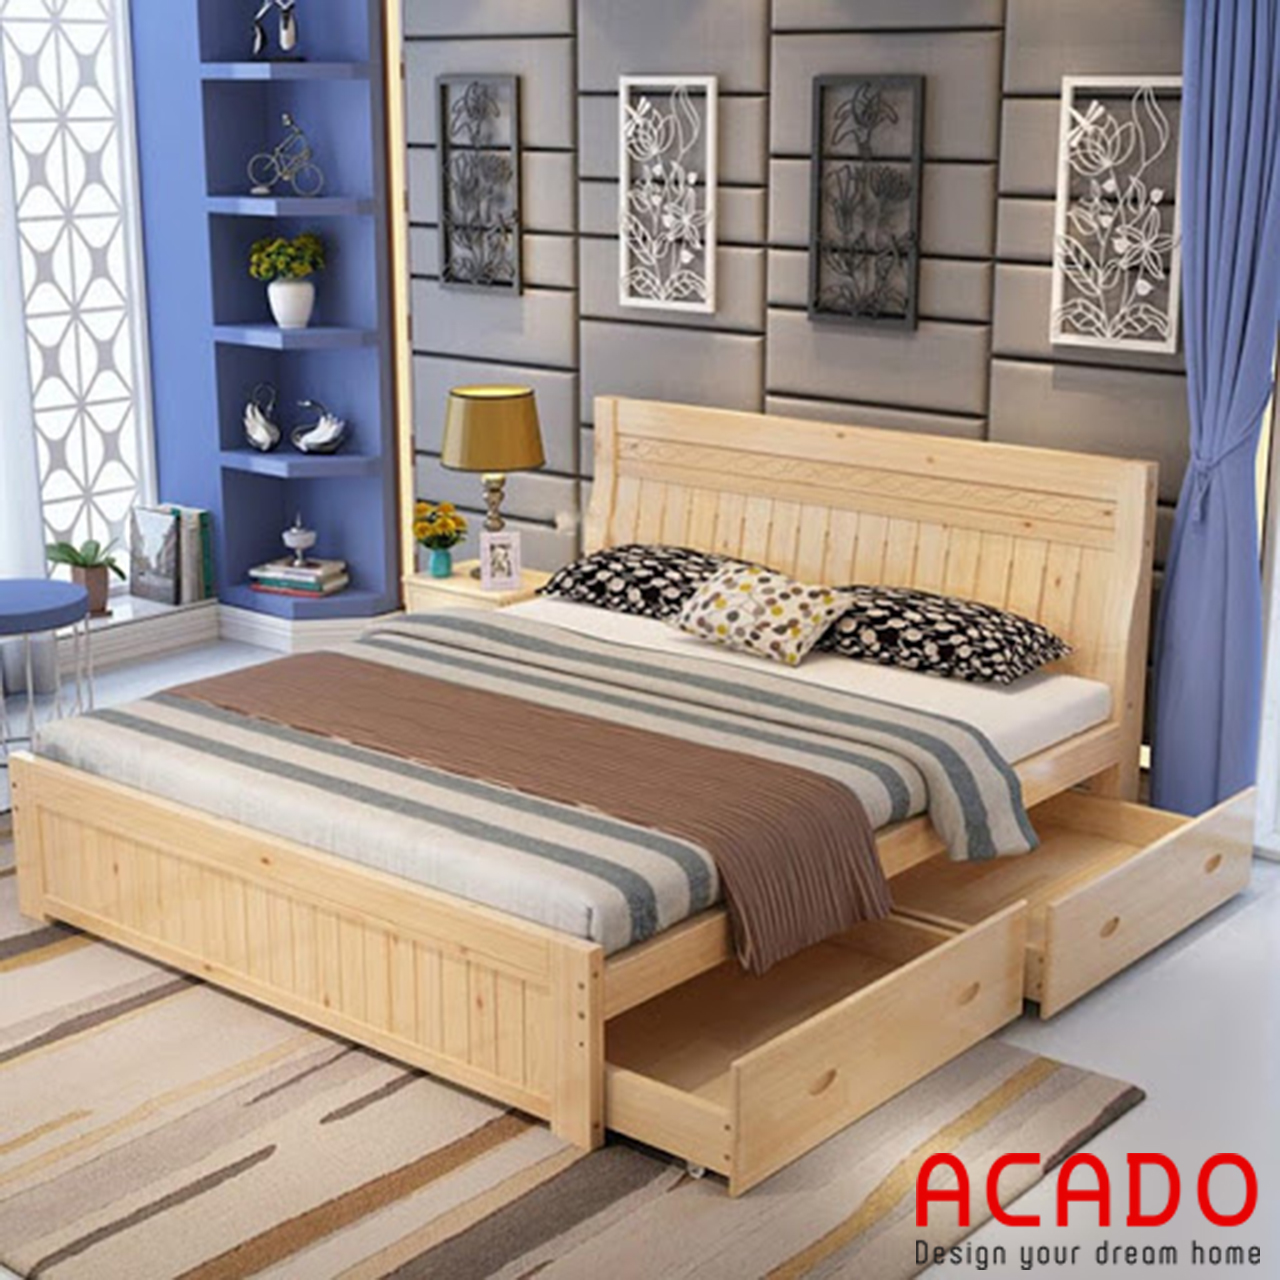 Giường ngủ gỗ sồi nga tự nhiên màu vàng nhạt trẻ trung có thiết kế thêm ngăn kéo